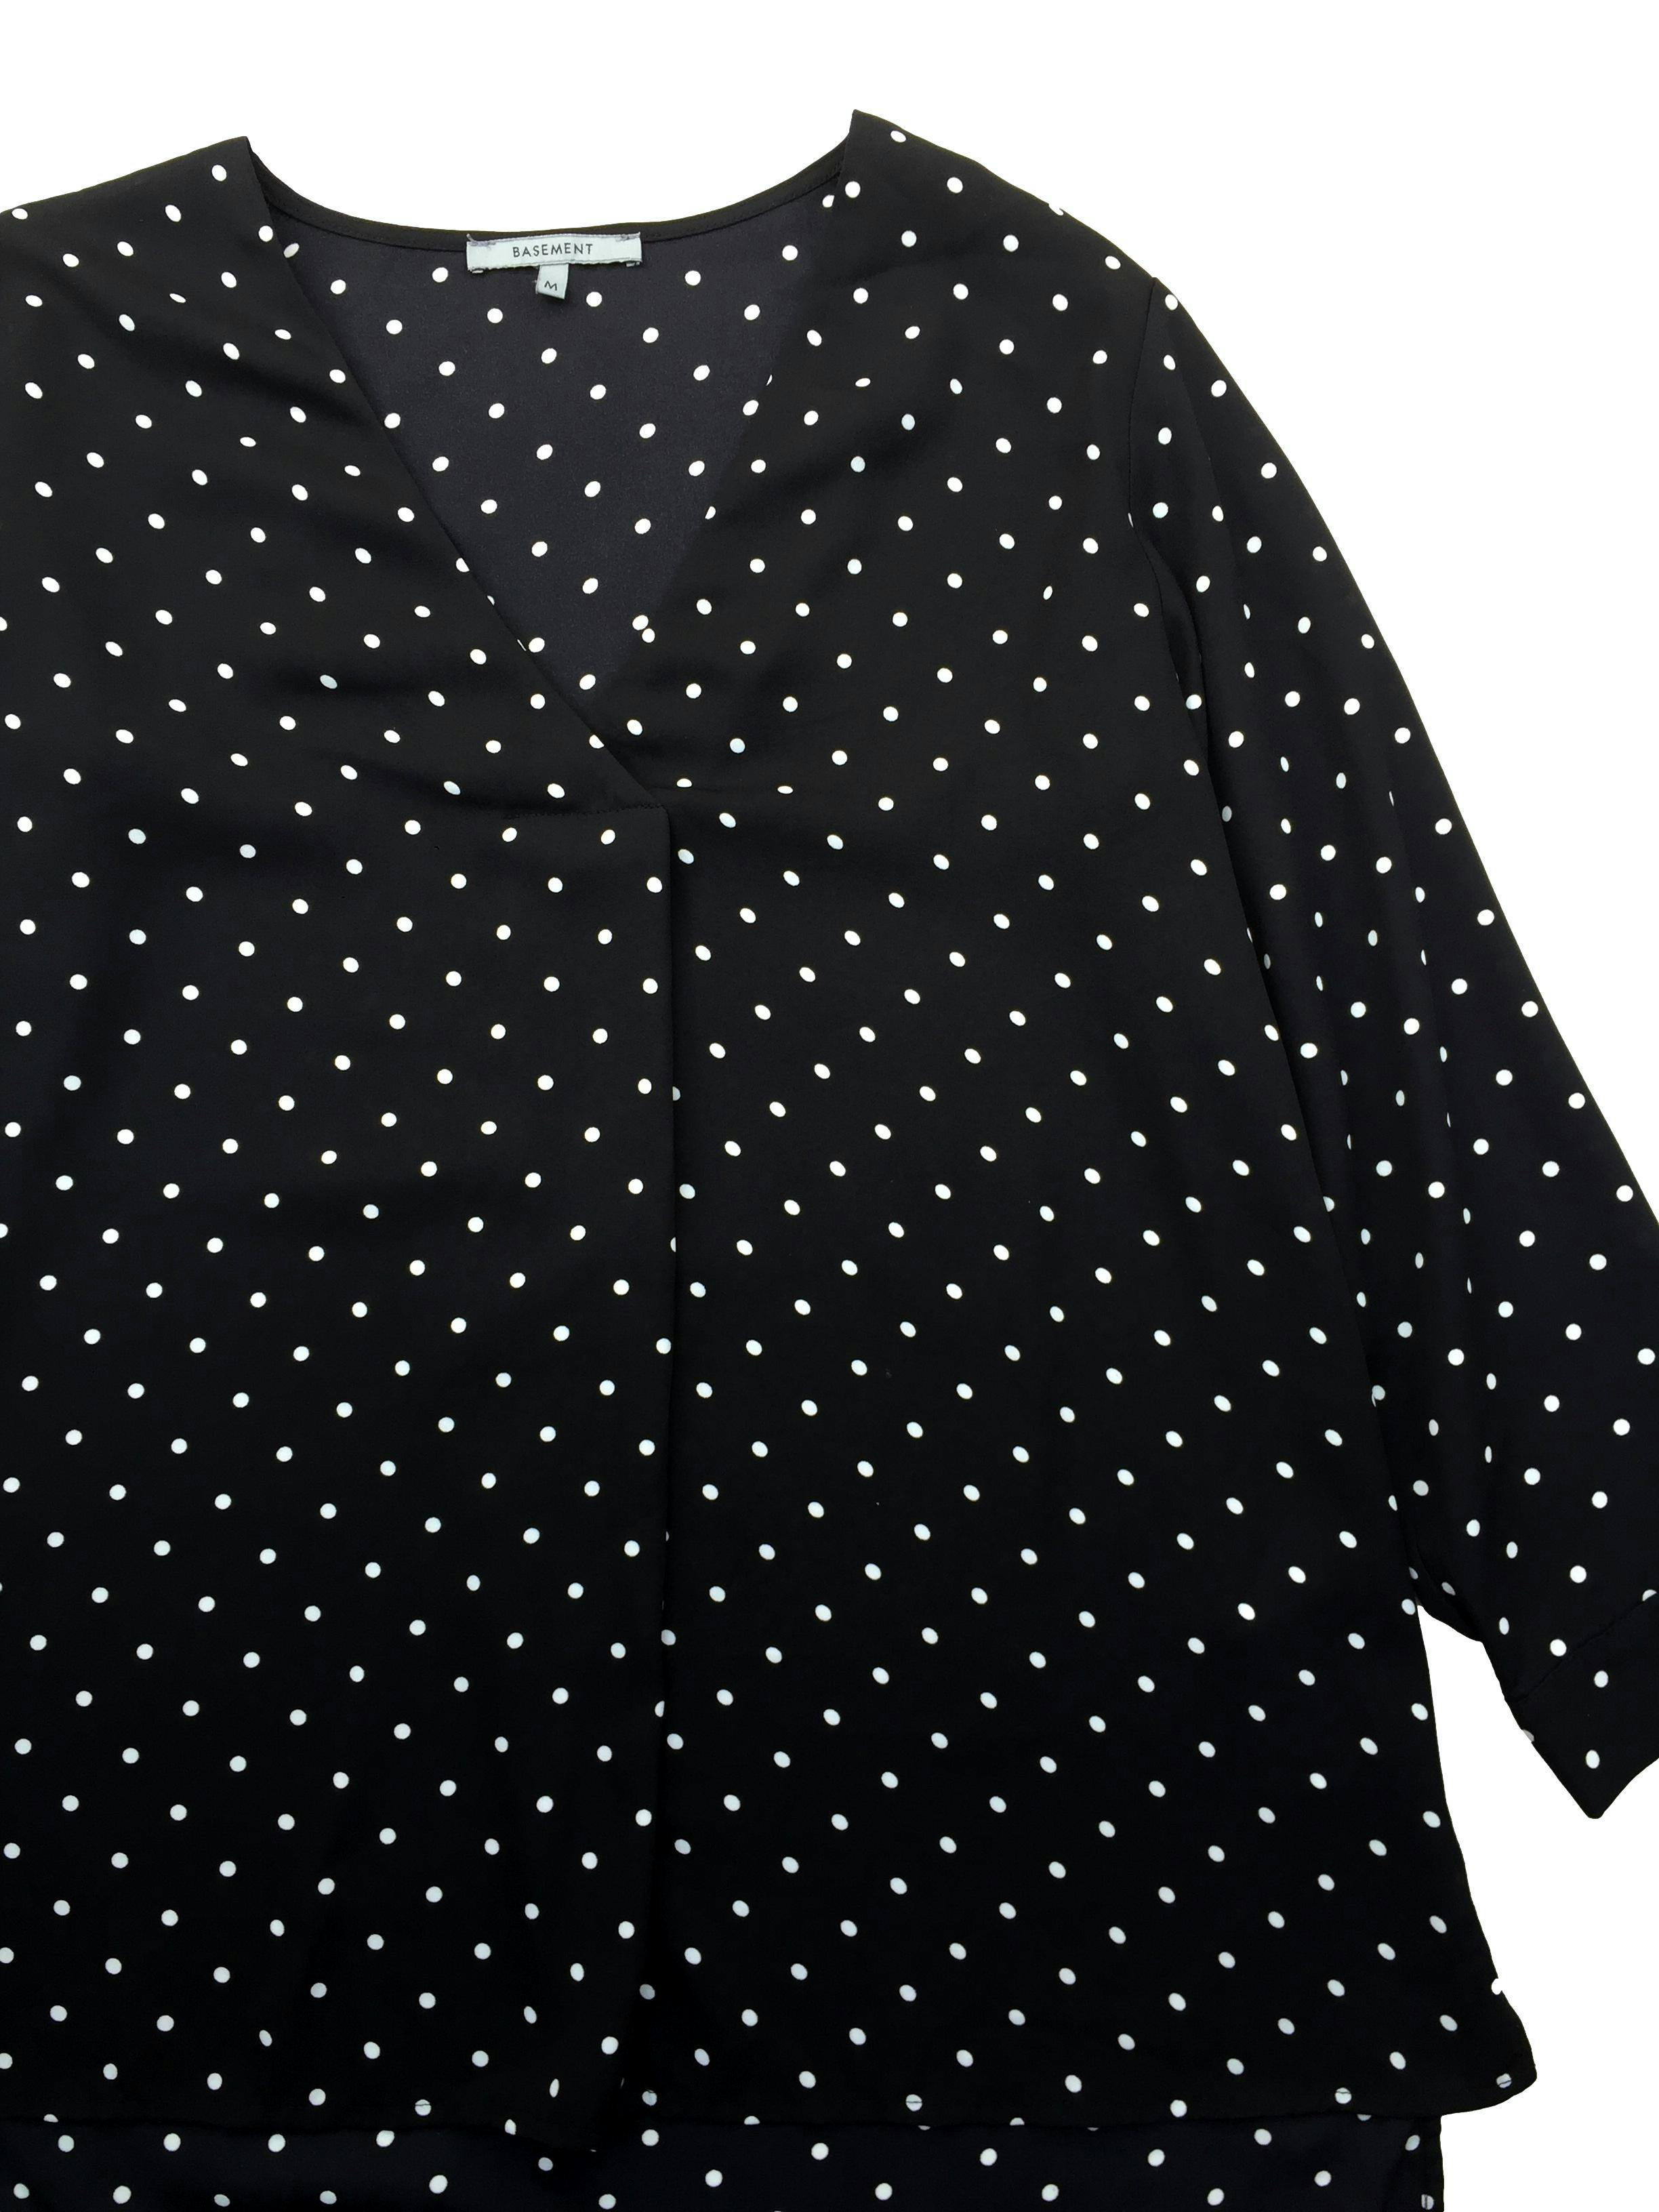 Blusa Basement de gasa negra con puntos blancos, escote en V y aberturas laterales. Busto 110cm, Largo 64cm.